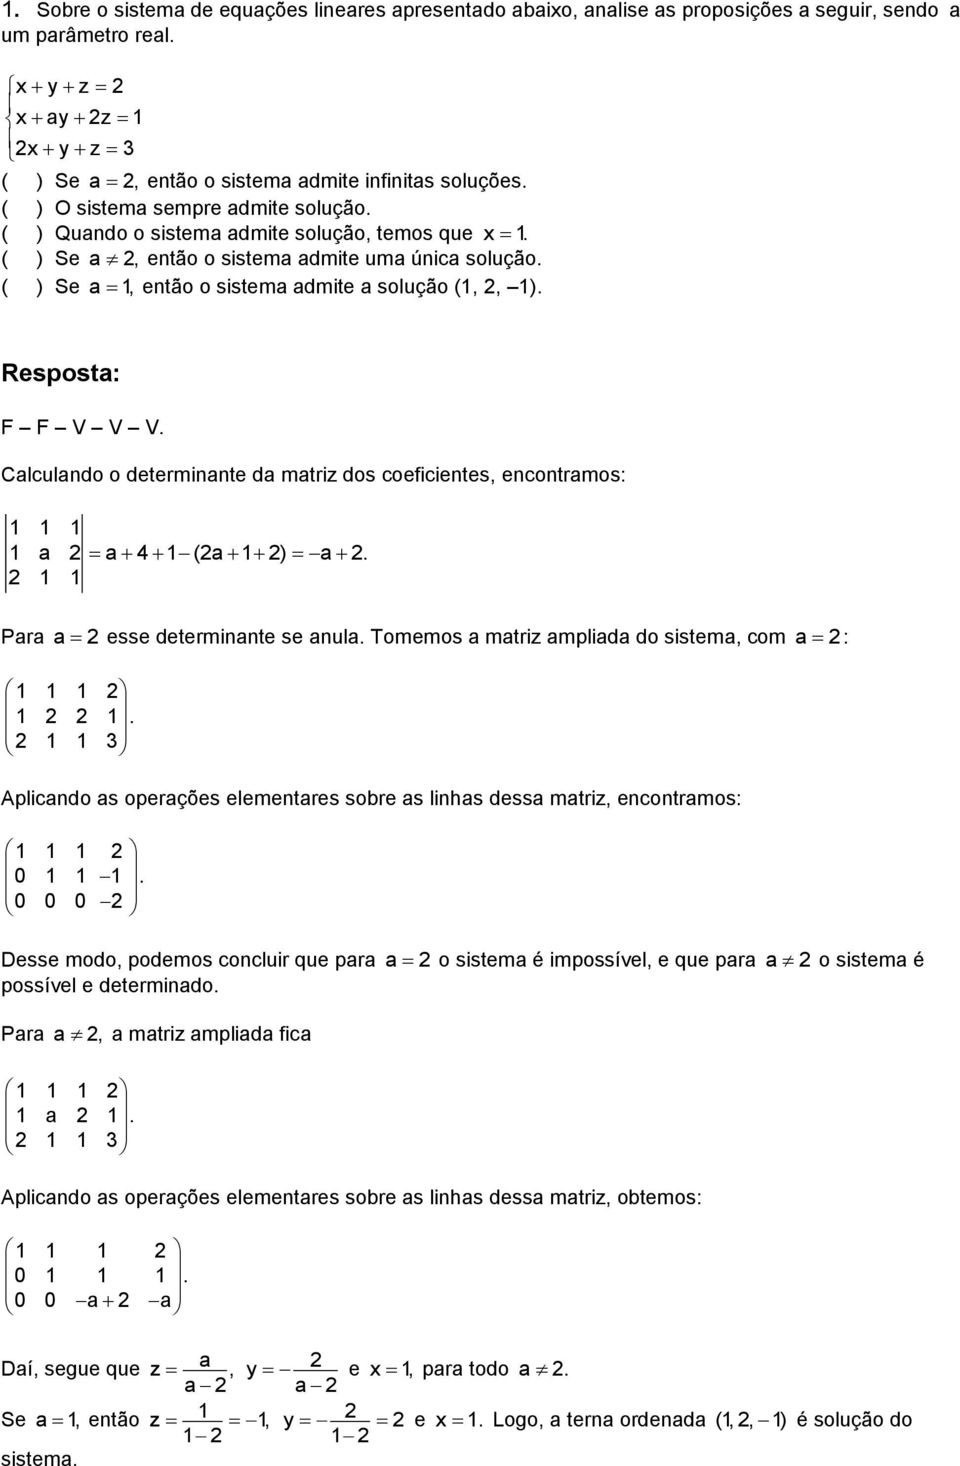 F F V V V. Calculando o determinante da matriz dos coeficientes, encontramos: 1 1 1 1 a a 4 1 (a 1 ) a. 1 1 Para a esse determinante se anula. Tomemos a matriz ampliada do sistema, com a : 1 1 1 1 1.